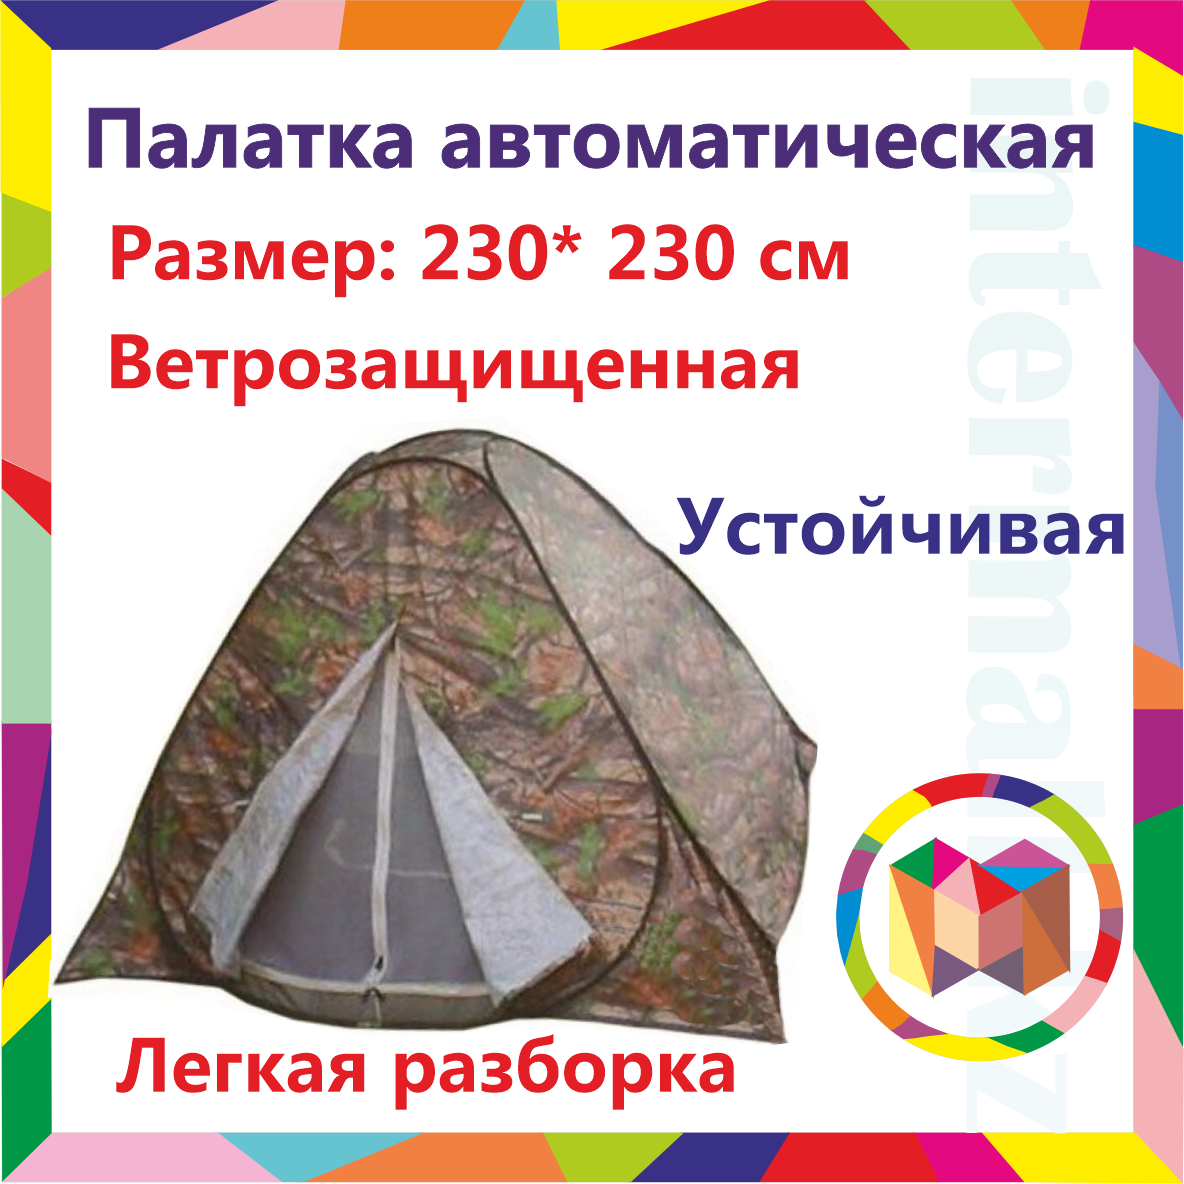 Палатка автоматическая 230* 230 см, палатка трехместная